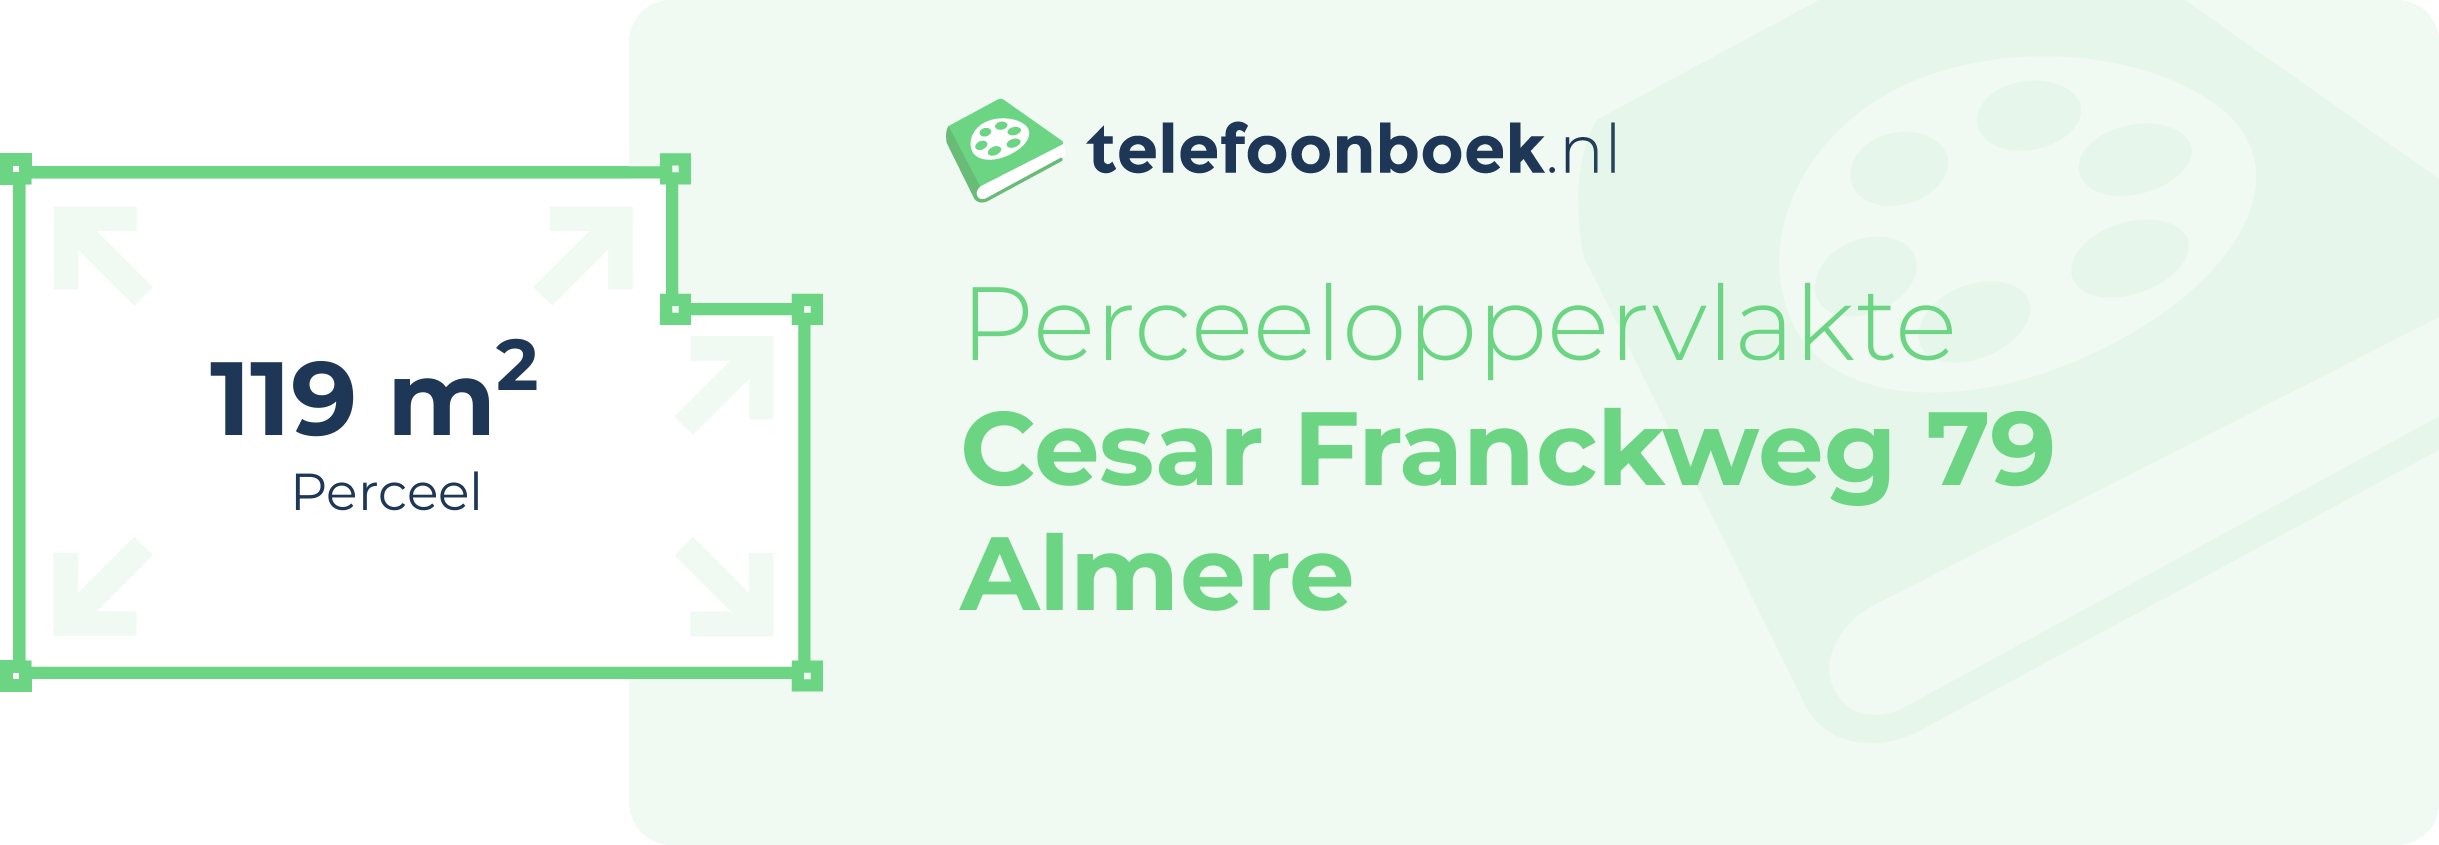 Perceeloppervlakte Cesar Franckweg 79 Almere